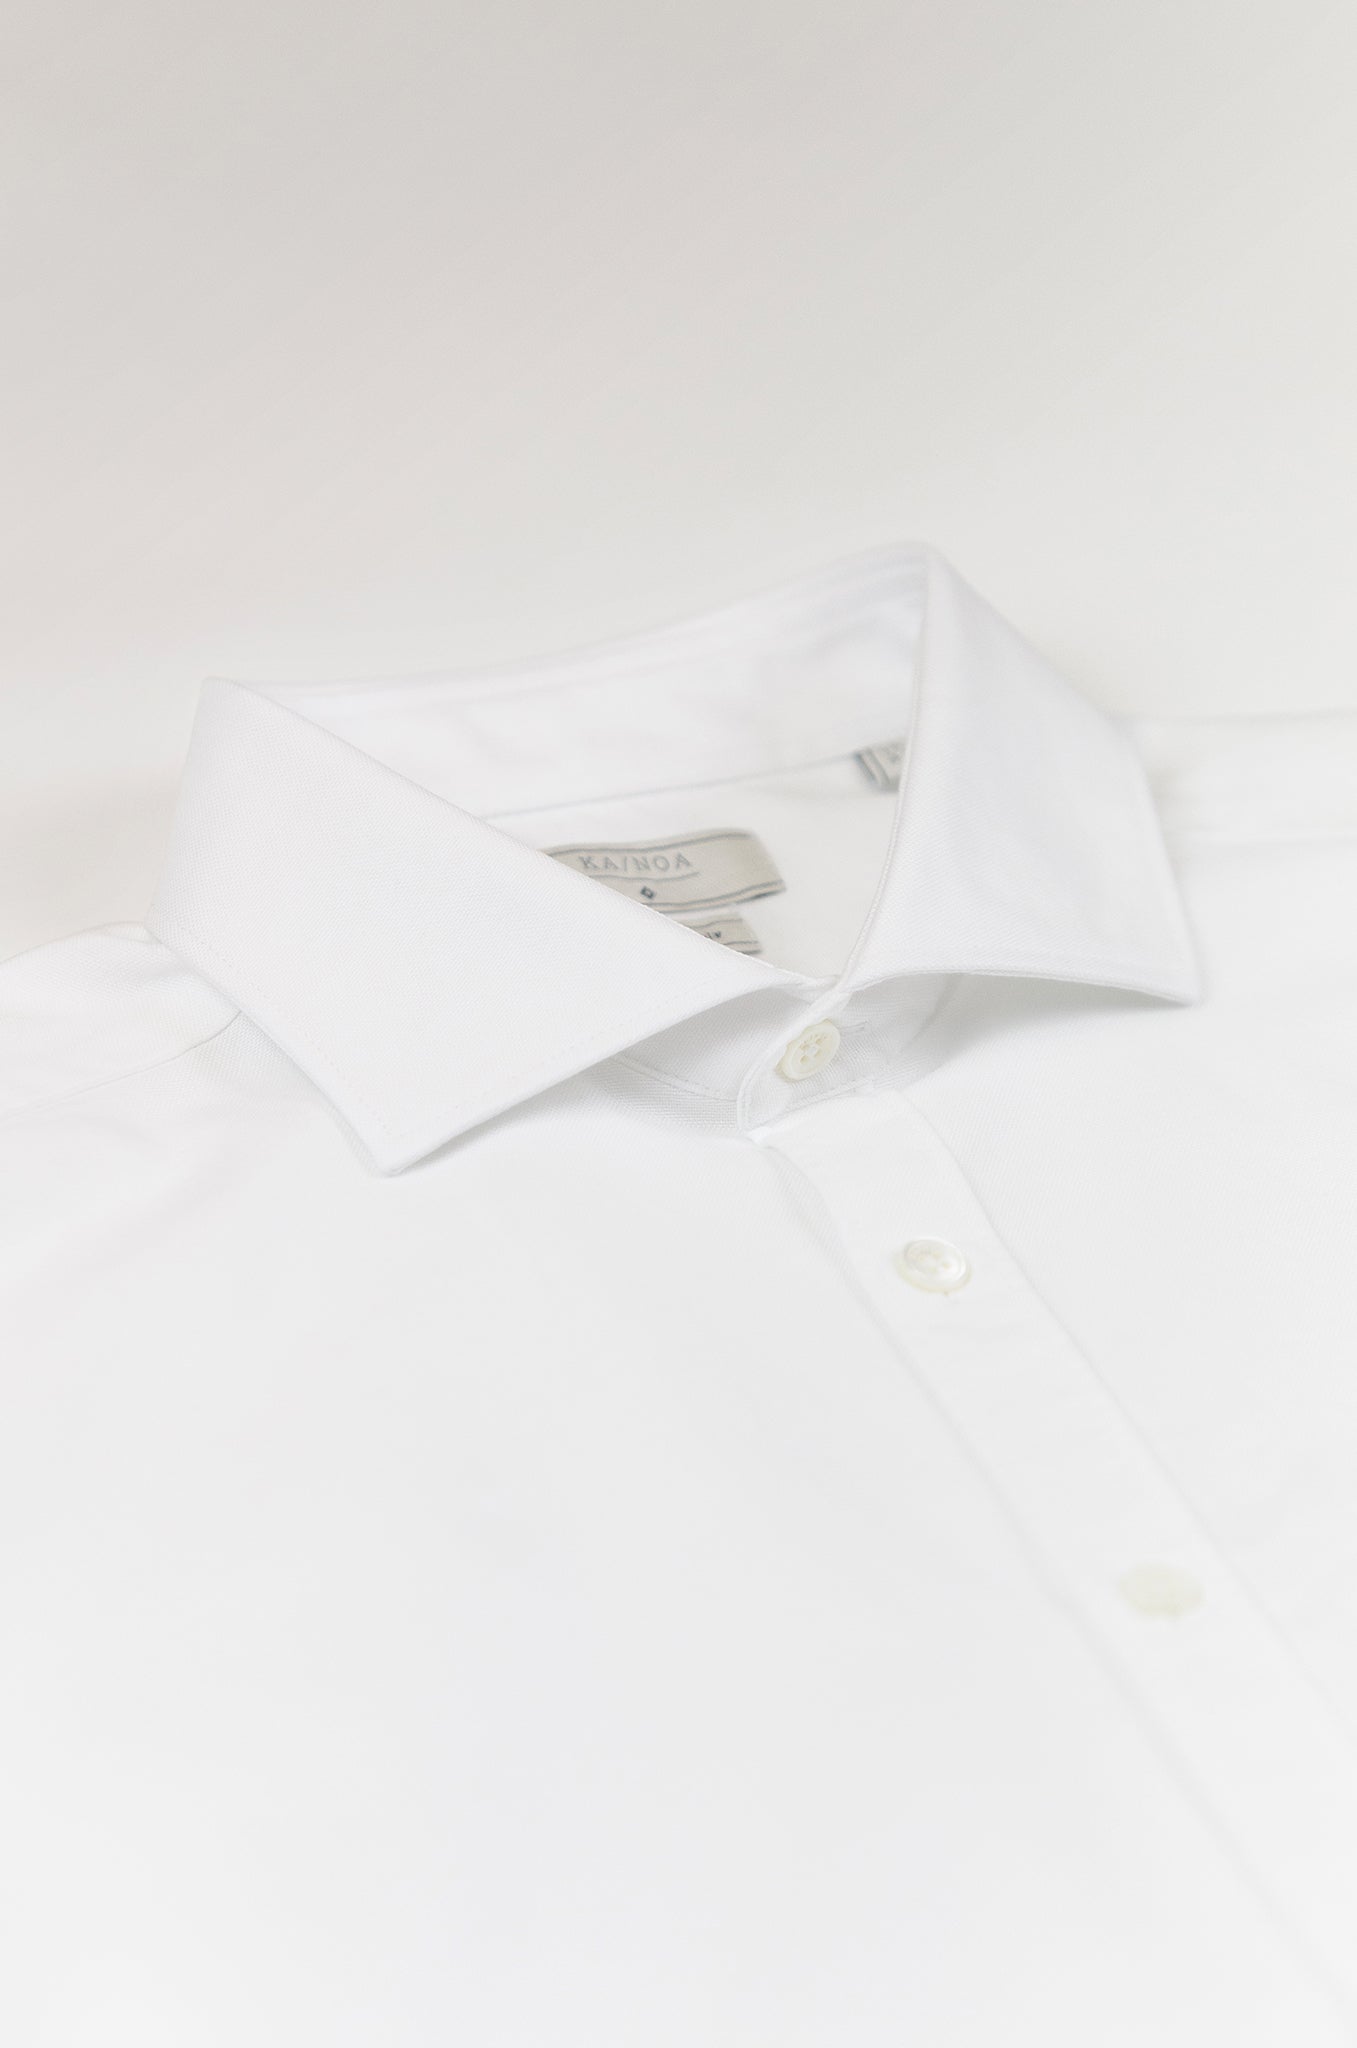 Clodoveu Oxford Shirt (white)